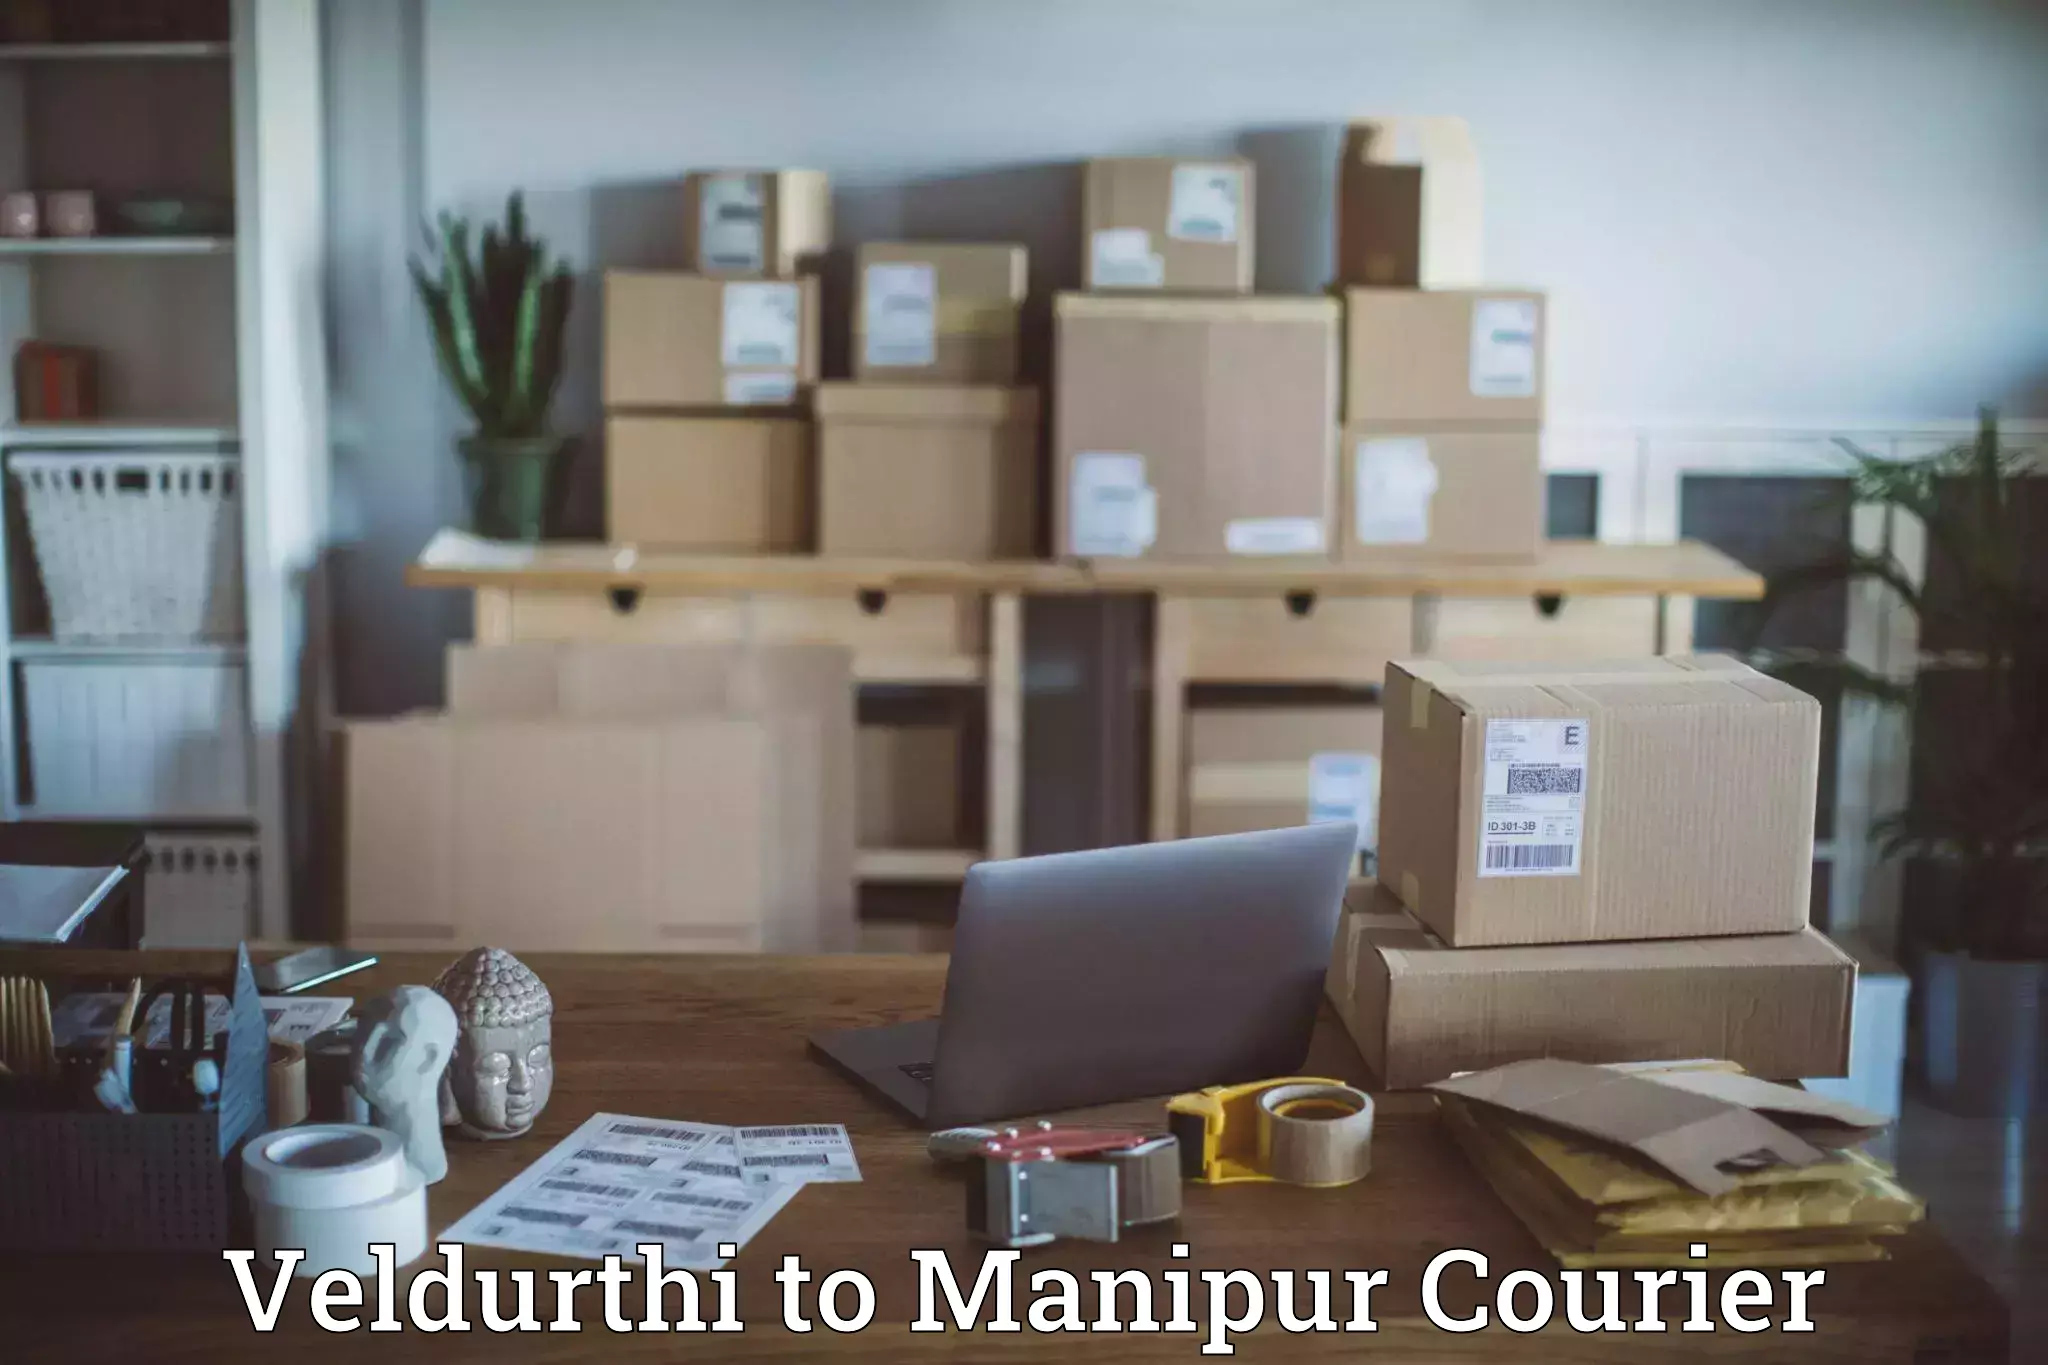 Parcel service for businesses Veldurthi to Manipur